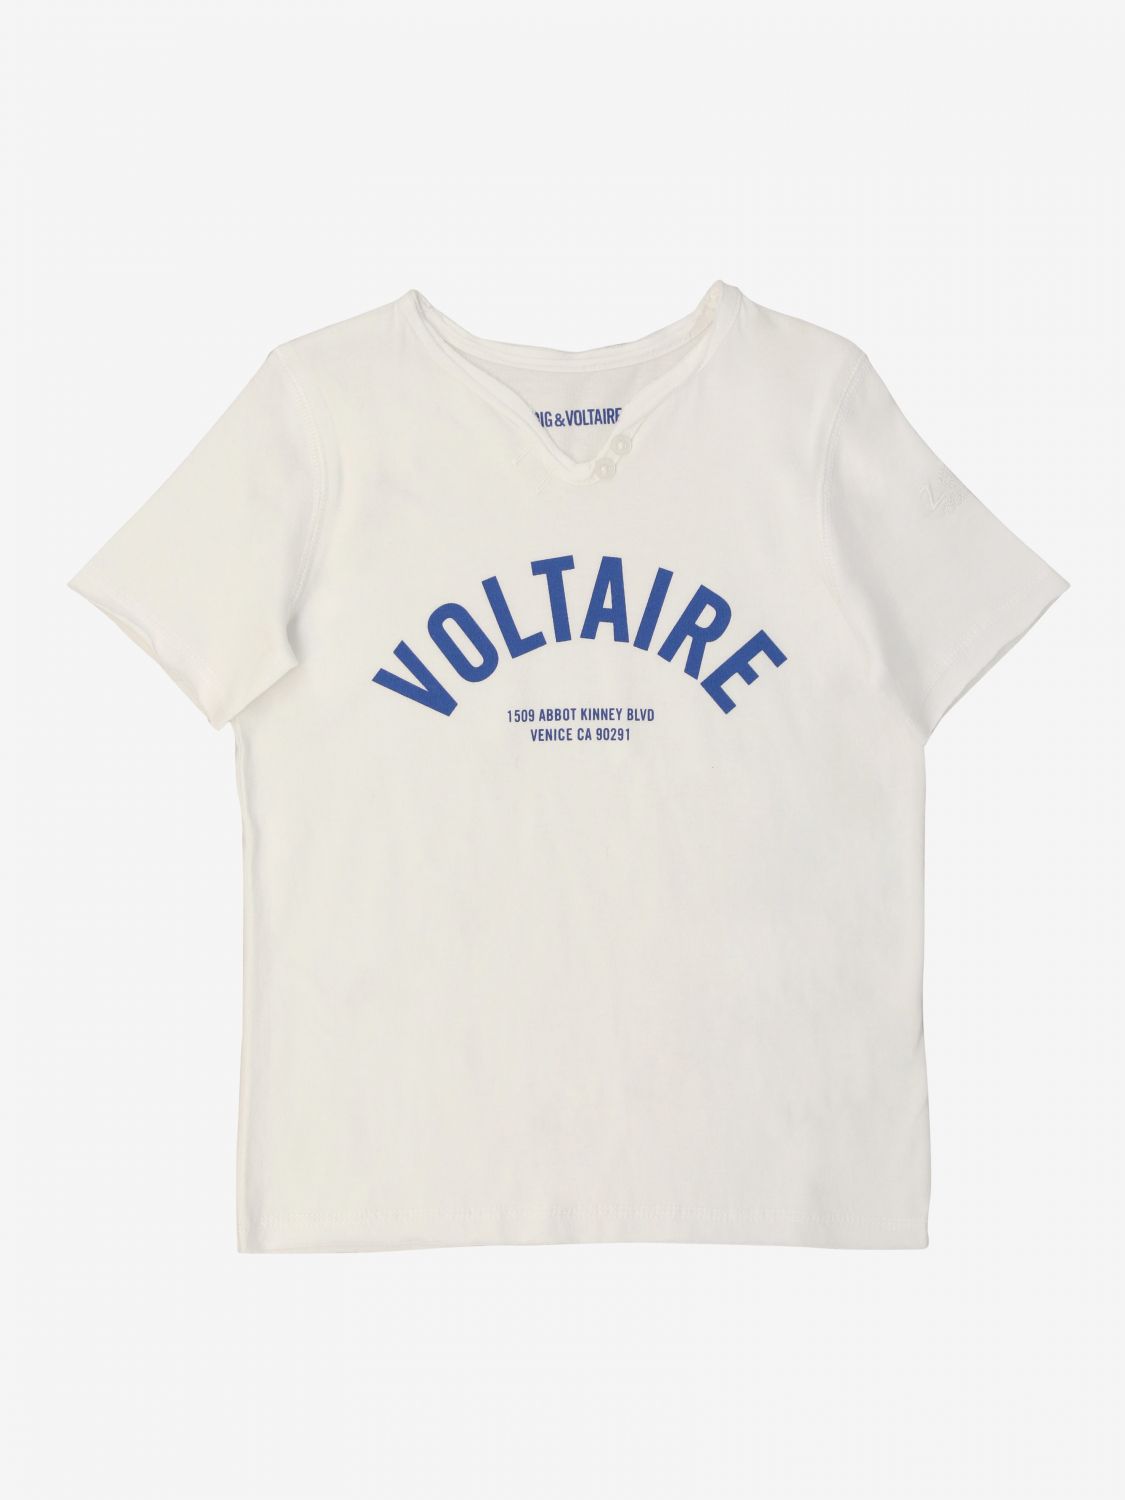 Buy > zadig et voltaire tee shirt > in stock